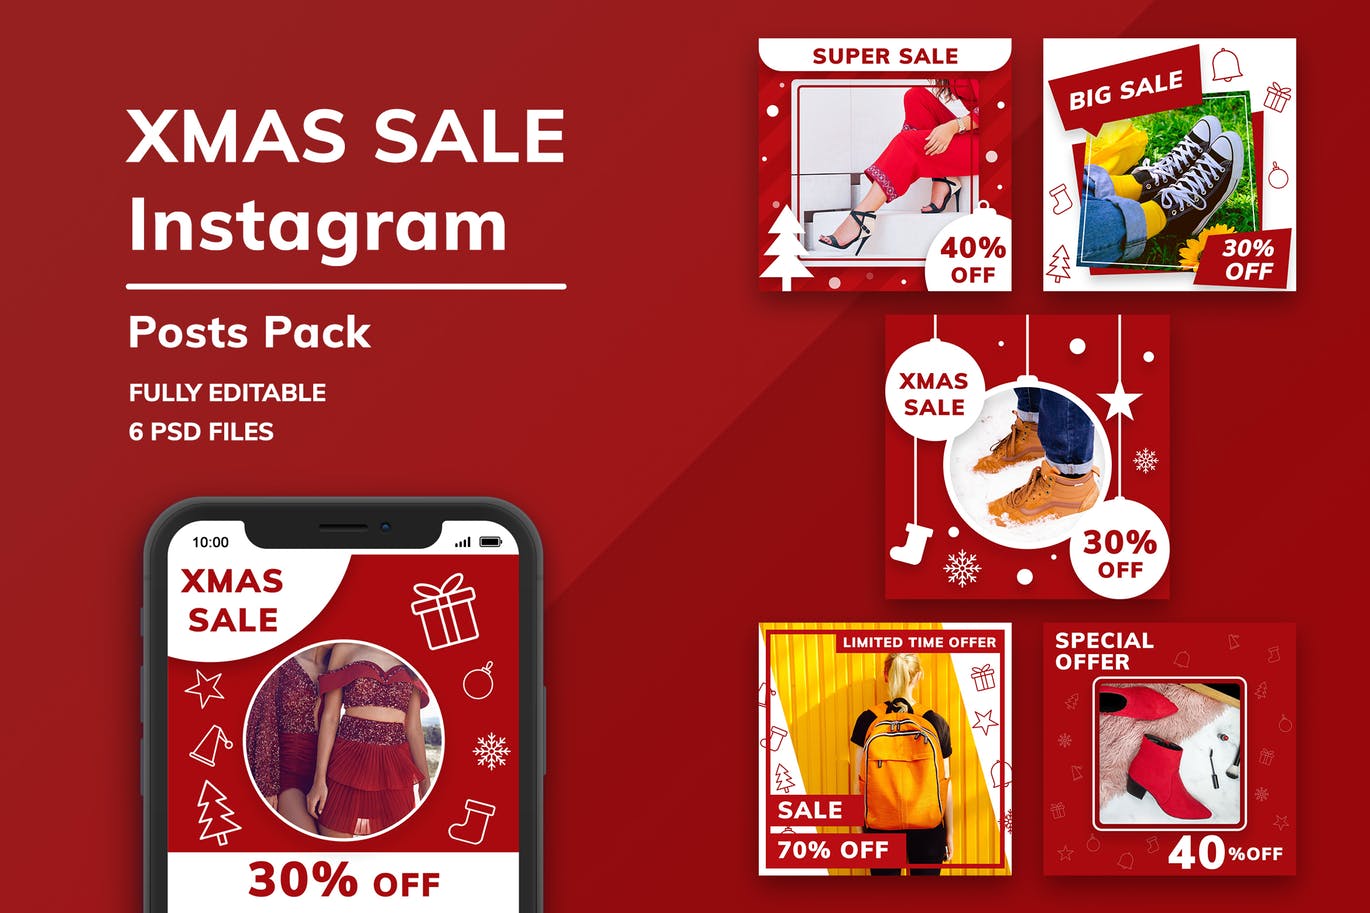 圣诞节主题促销Instagram广告设计素材 Christmas Sale Instagram Posts Pack插图